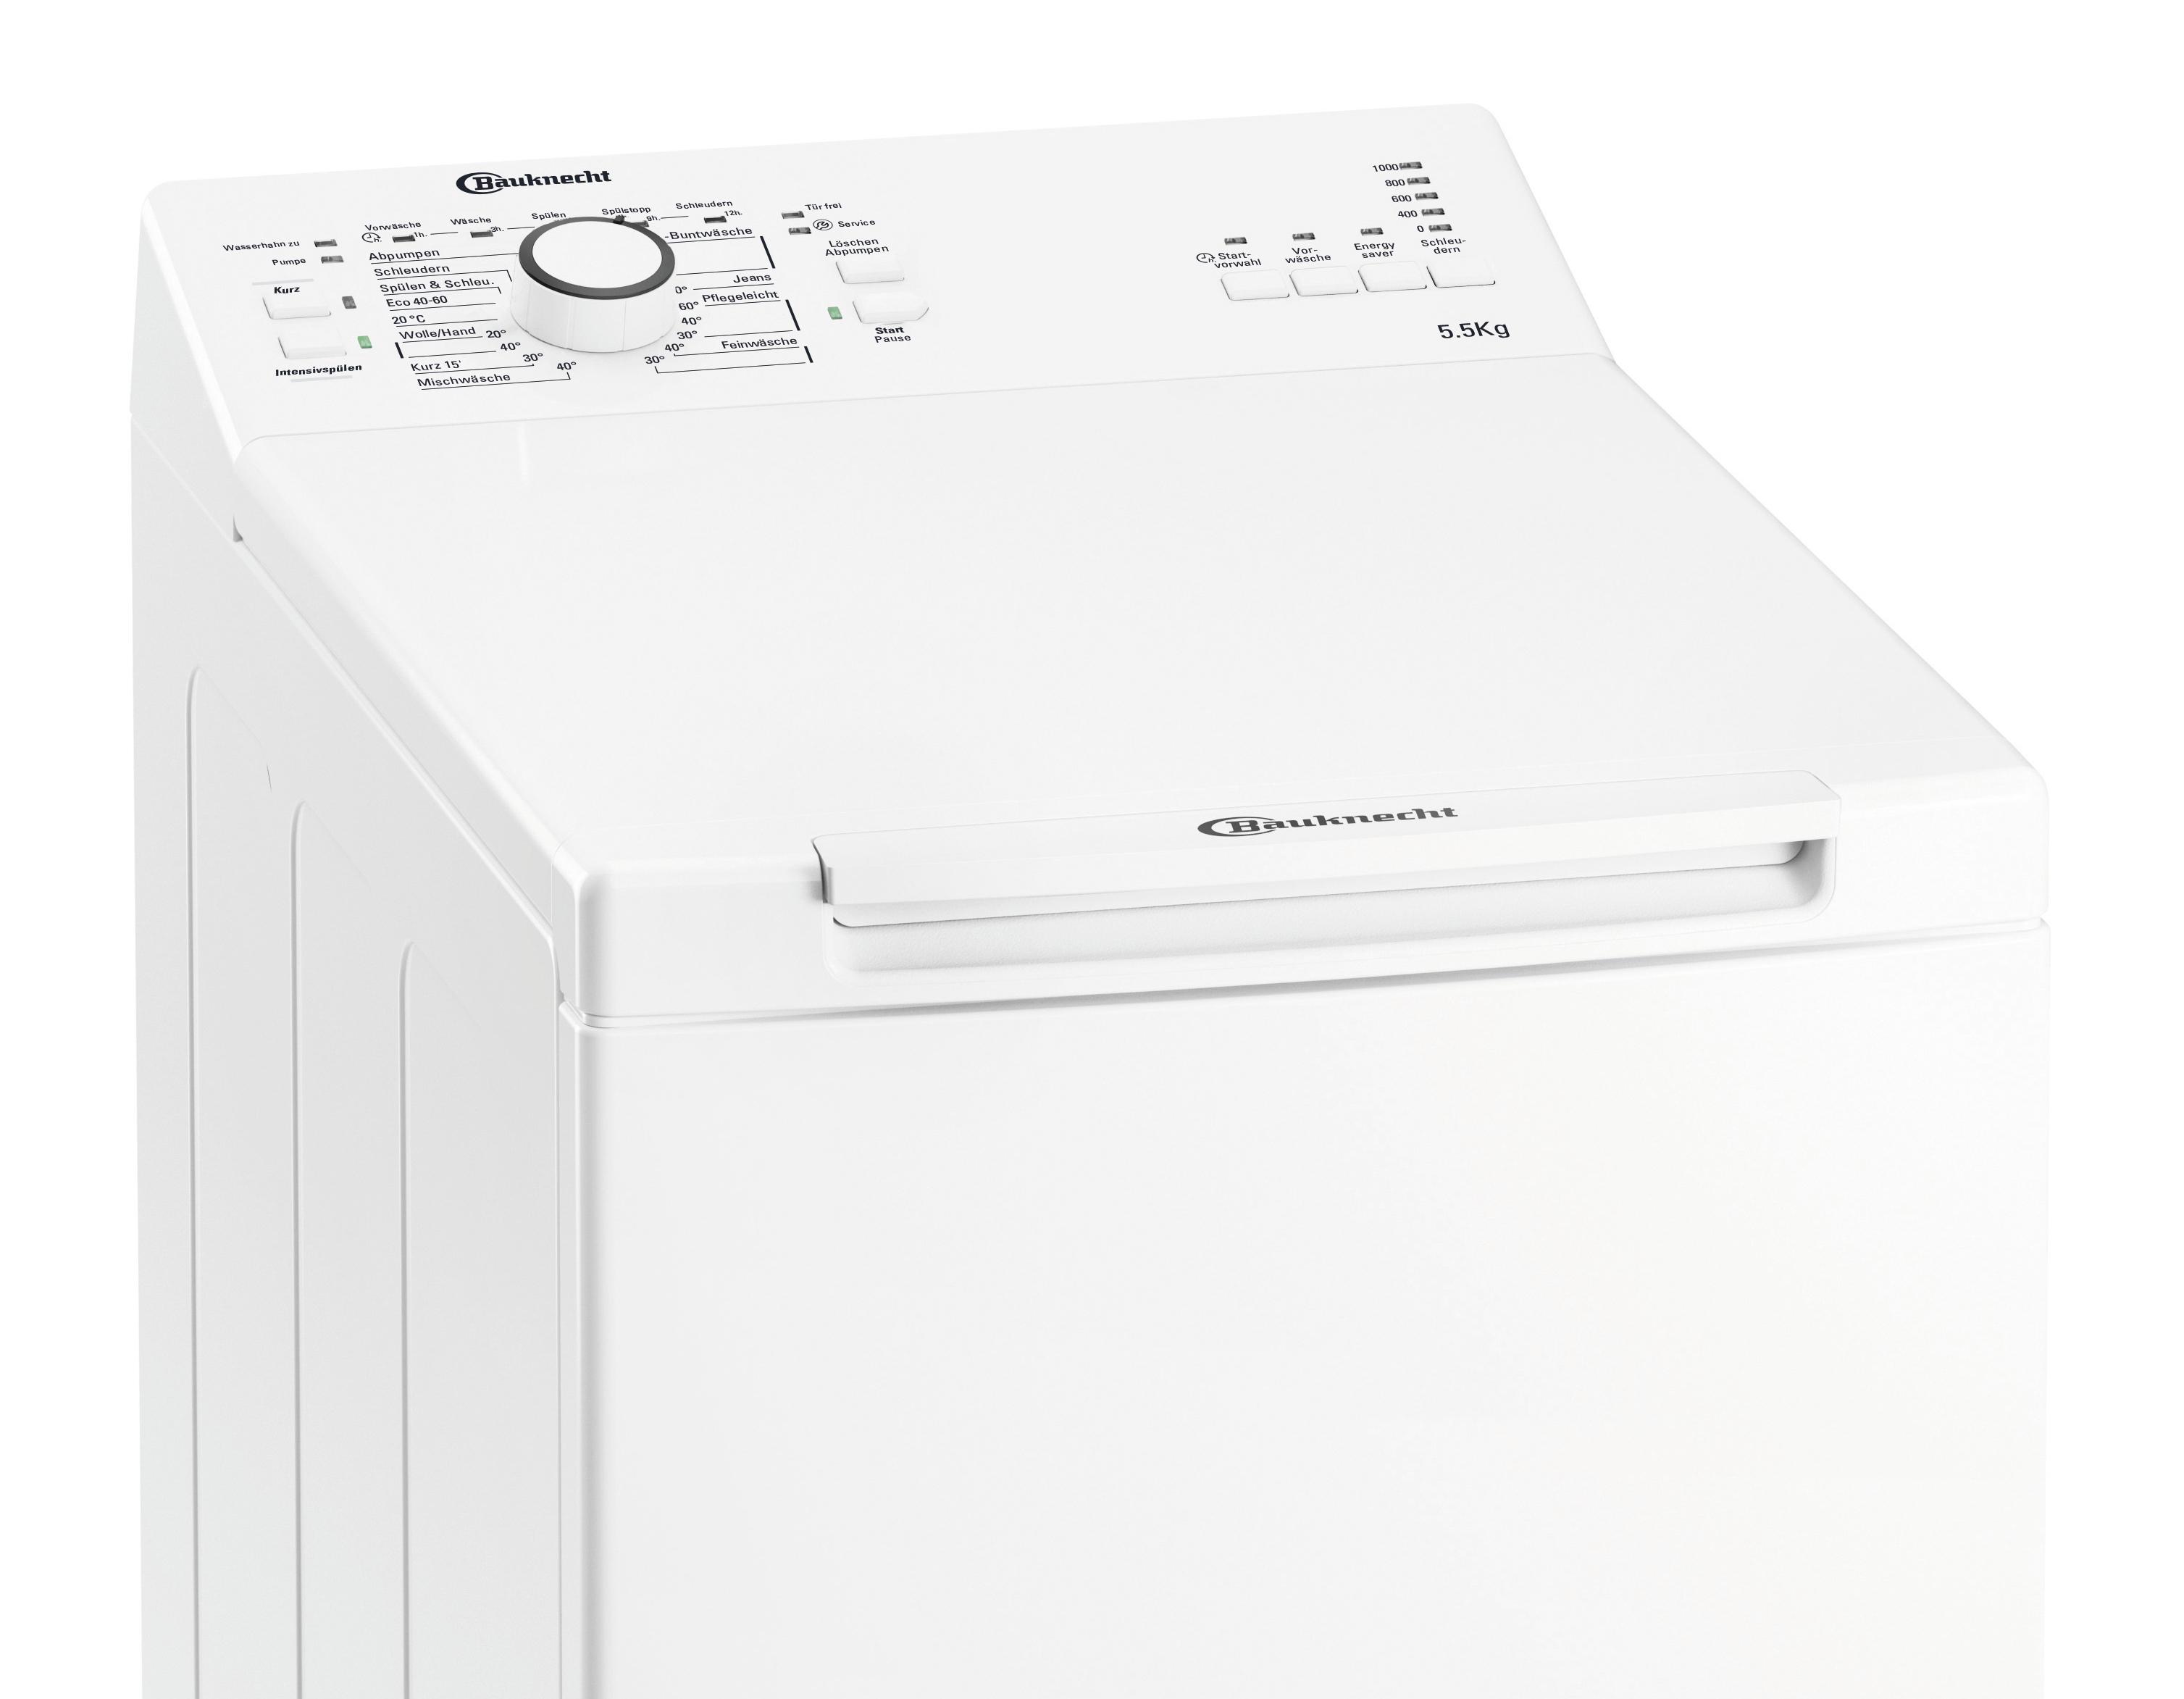 Waschmaschine Wat Prime 550 Sd N 5,5 Kg 1000 U/Min Toplader - Weiß, Basics, Kunststoff/Metall (40/90/60cm) - Bauknecht